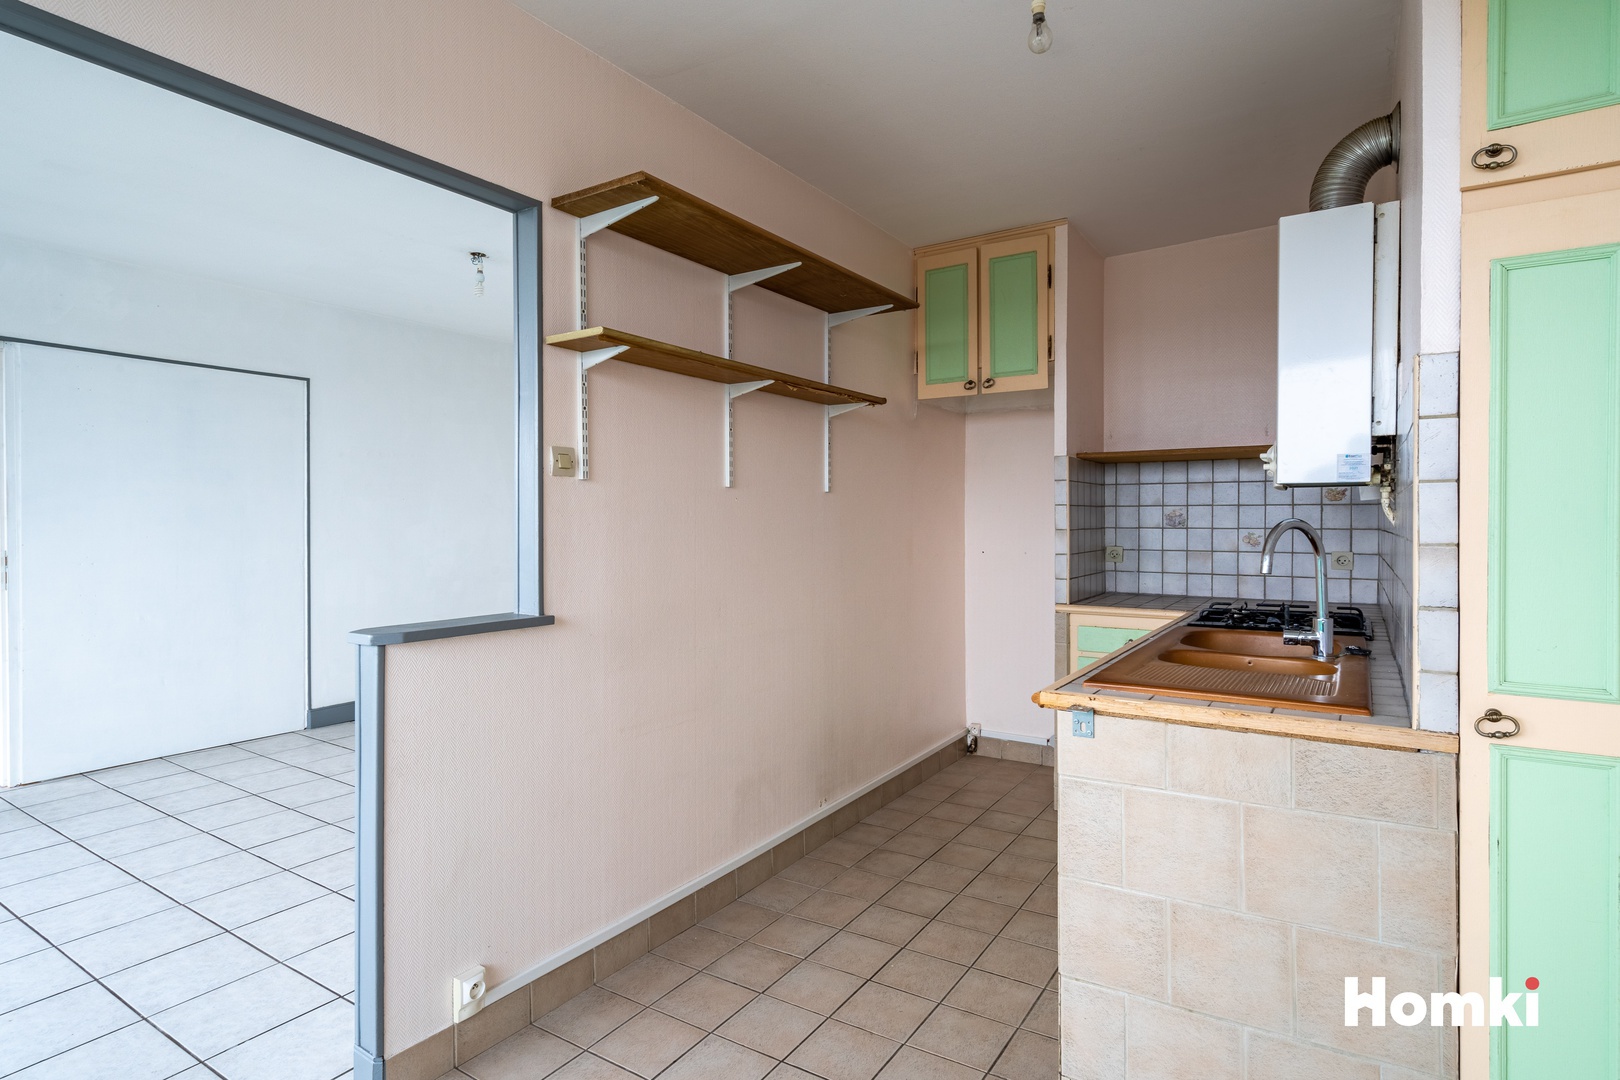 Homki - Vente Appartement  de 71.0 m² à Mérignac 33700